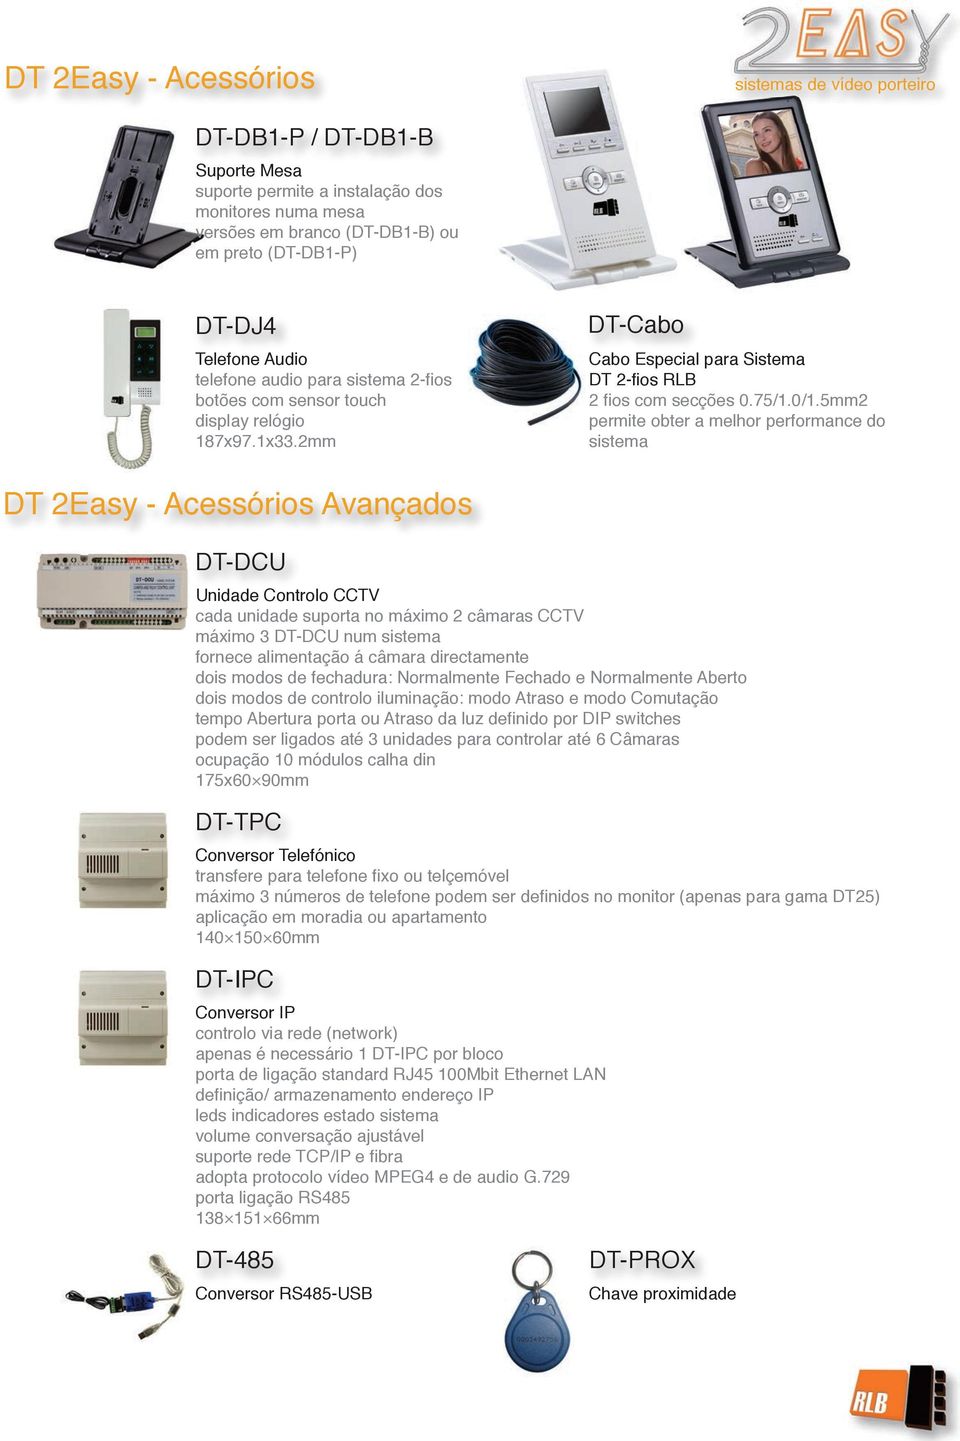 5mm2 permite obter a melhor performance do sistema DT 2Easy - Acessórios Avançados DT-DCU Unidade Controlo CCTV cada unidade suporta no máximo 2 câmaras CCTV máximo 3 DT-DCU num sistema fornece